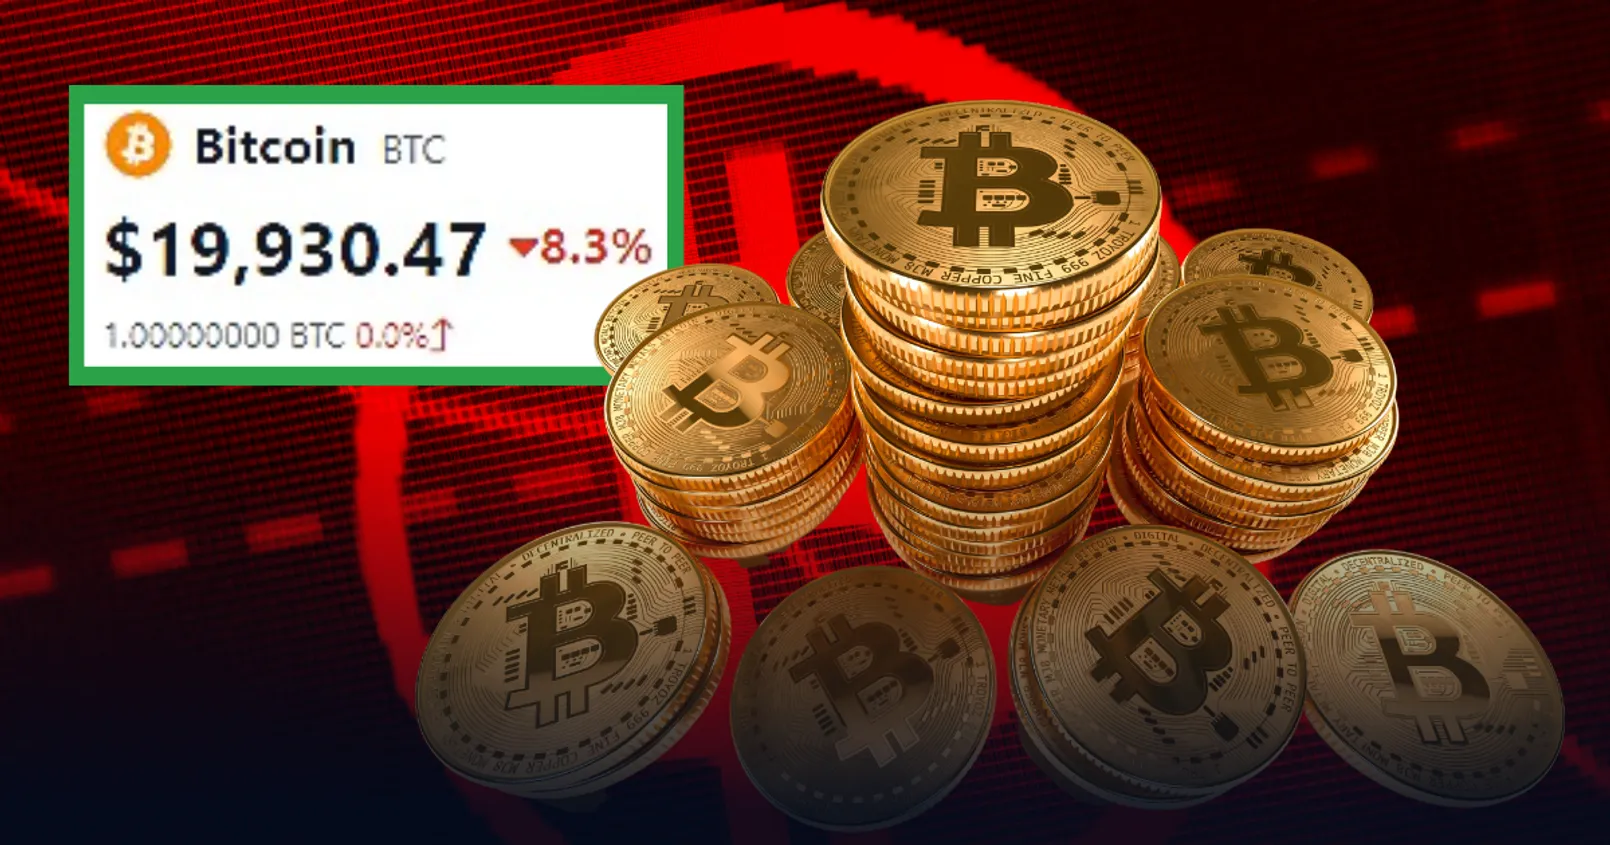 Bitcoin ร่วงหนัก! ติดลบ 8.3 เปอร์เซ็นภายในหนึ่งวัน